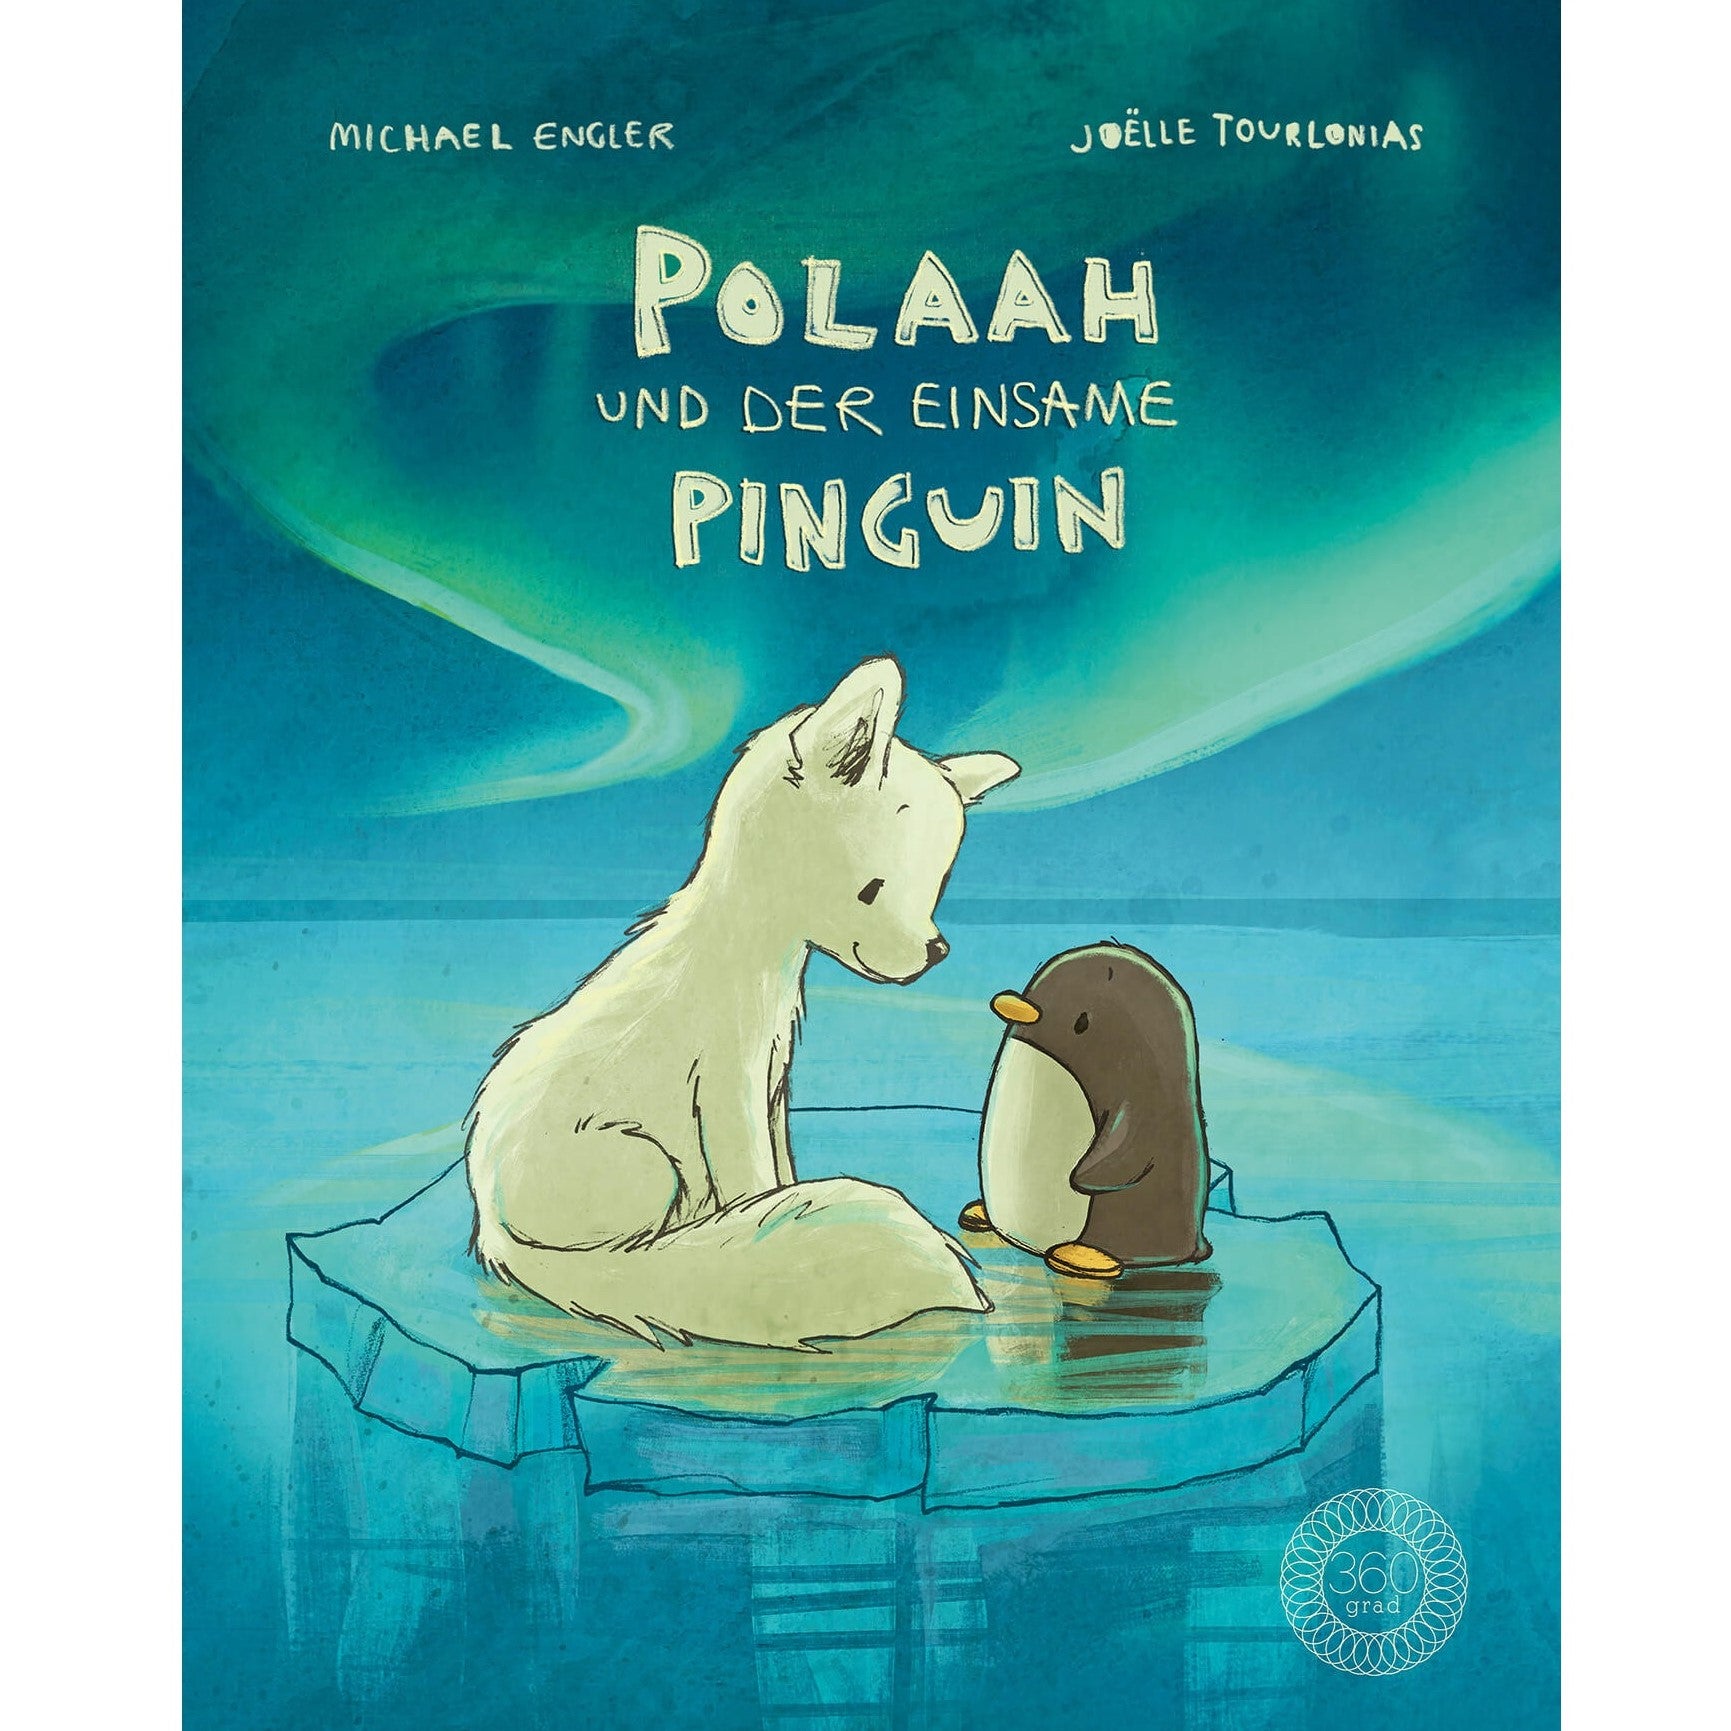 Polaah und der einsame Pinguin von Michael Engler